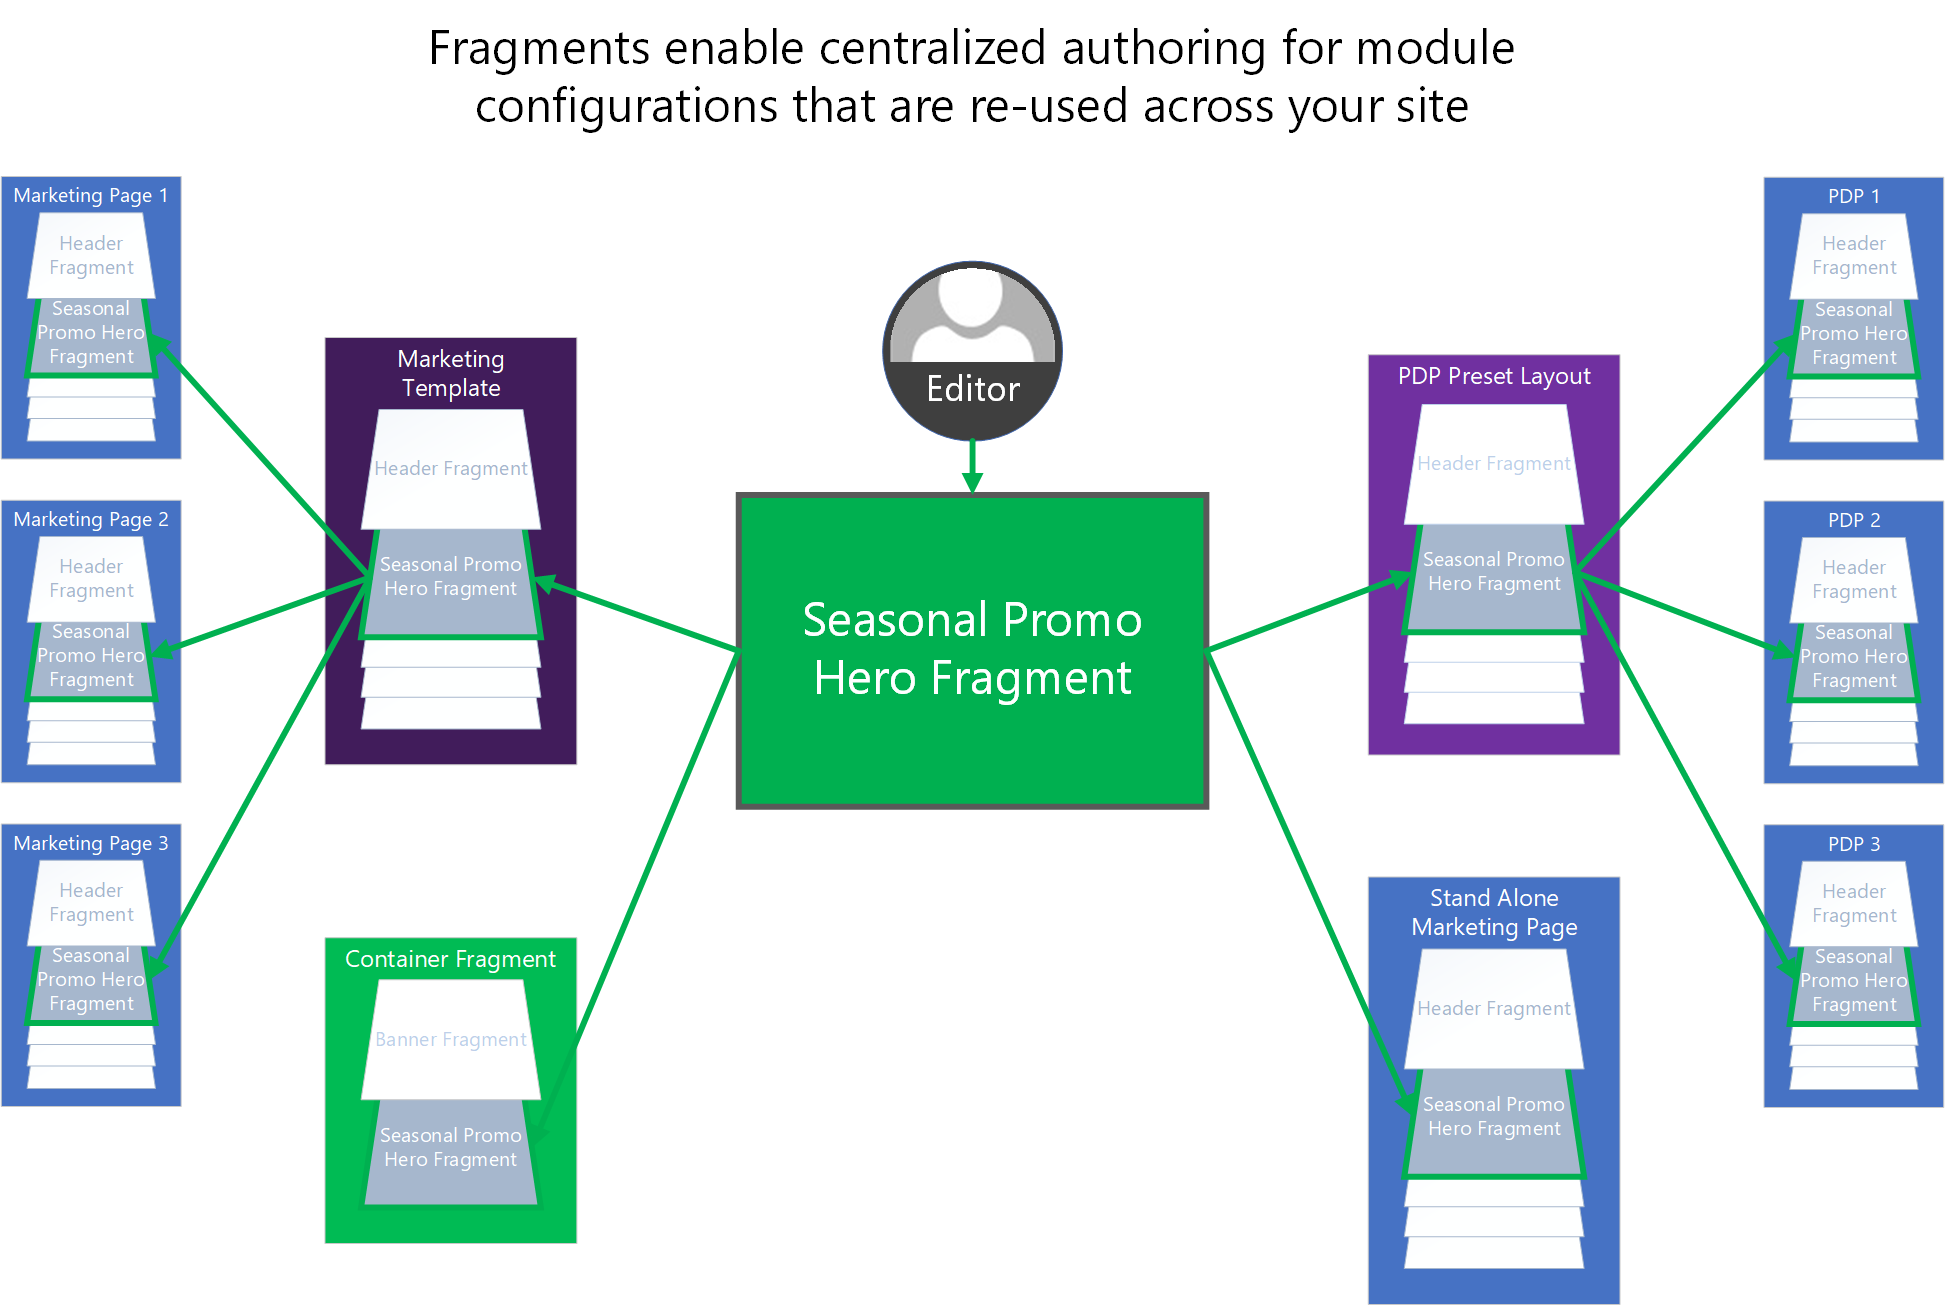 Na ilustracji pokazano, jak fragmenty mogą być używane do scentralizowanego tworzenia konfiguracji modułu udostępnionego w witrynie e-Commerce.